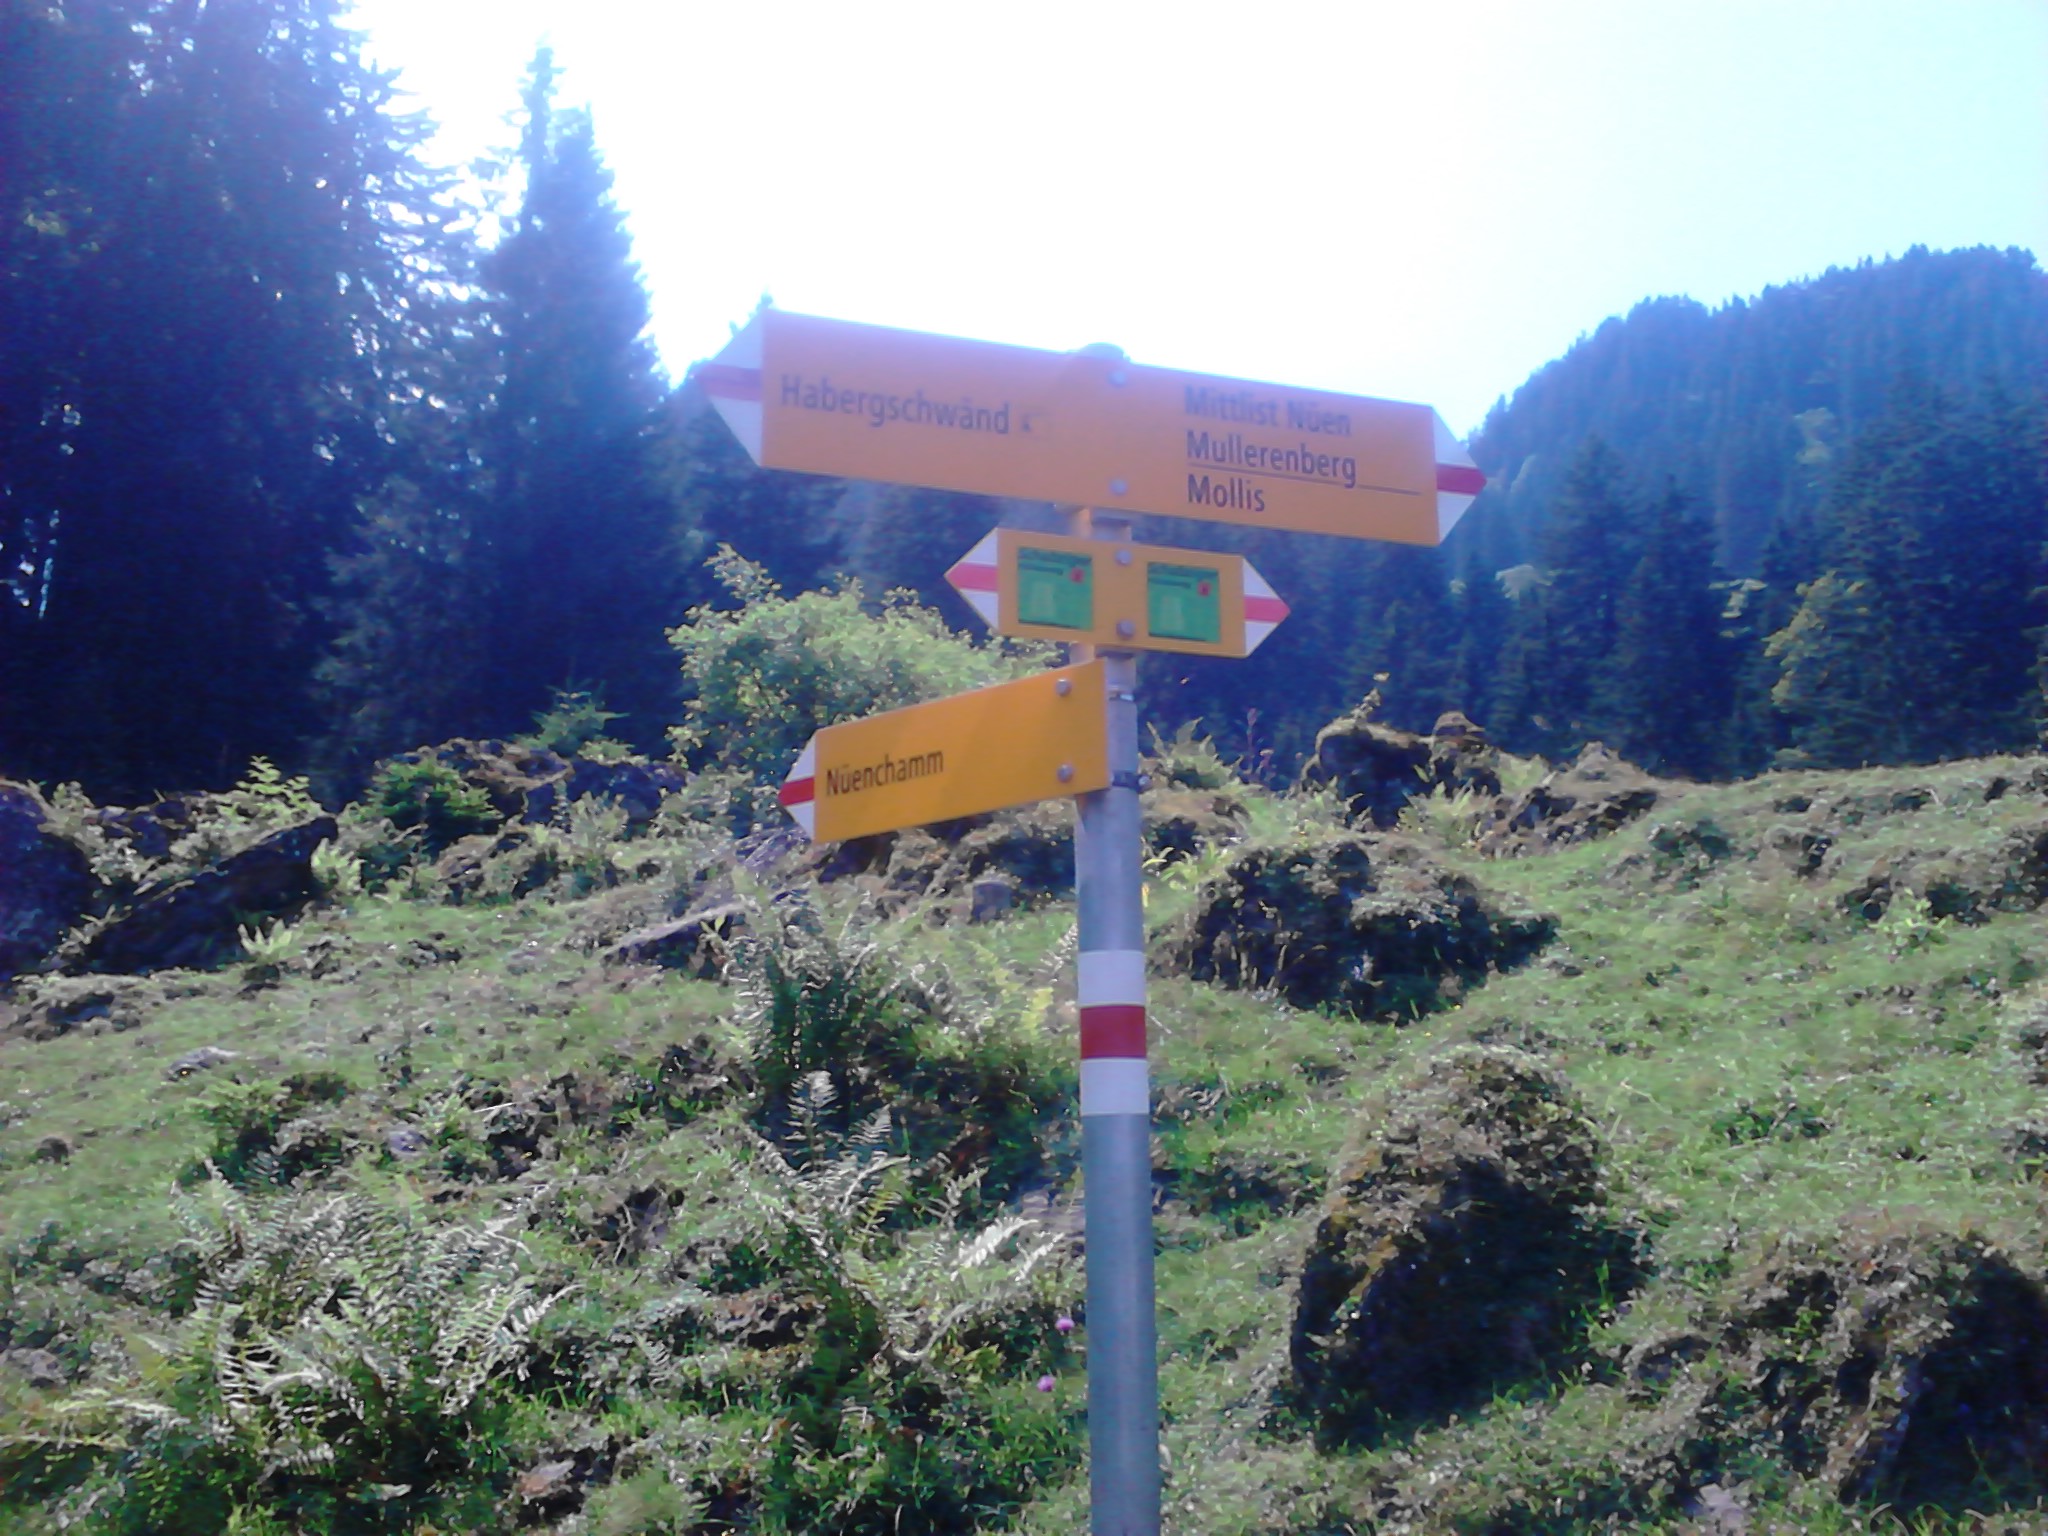 Wanderweg sign